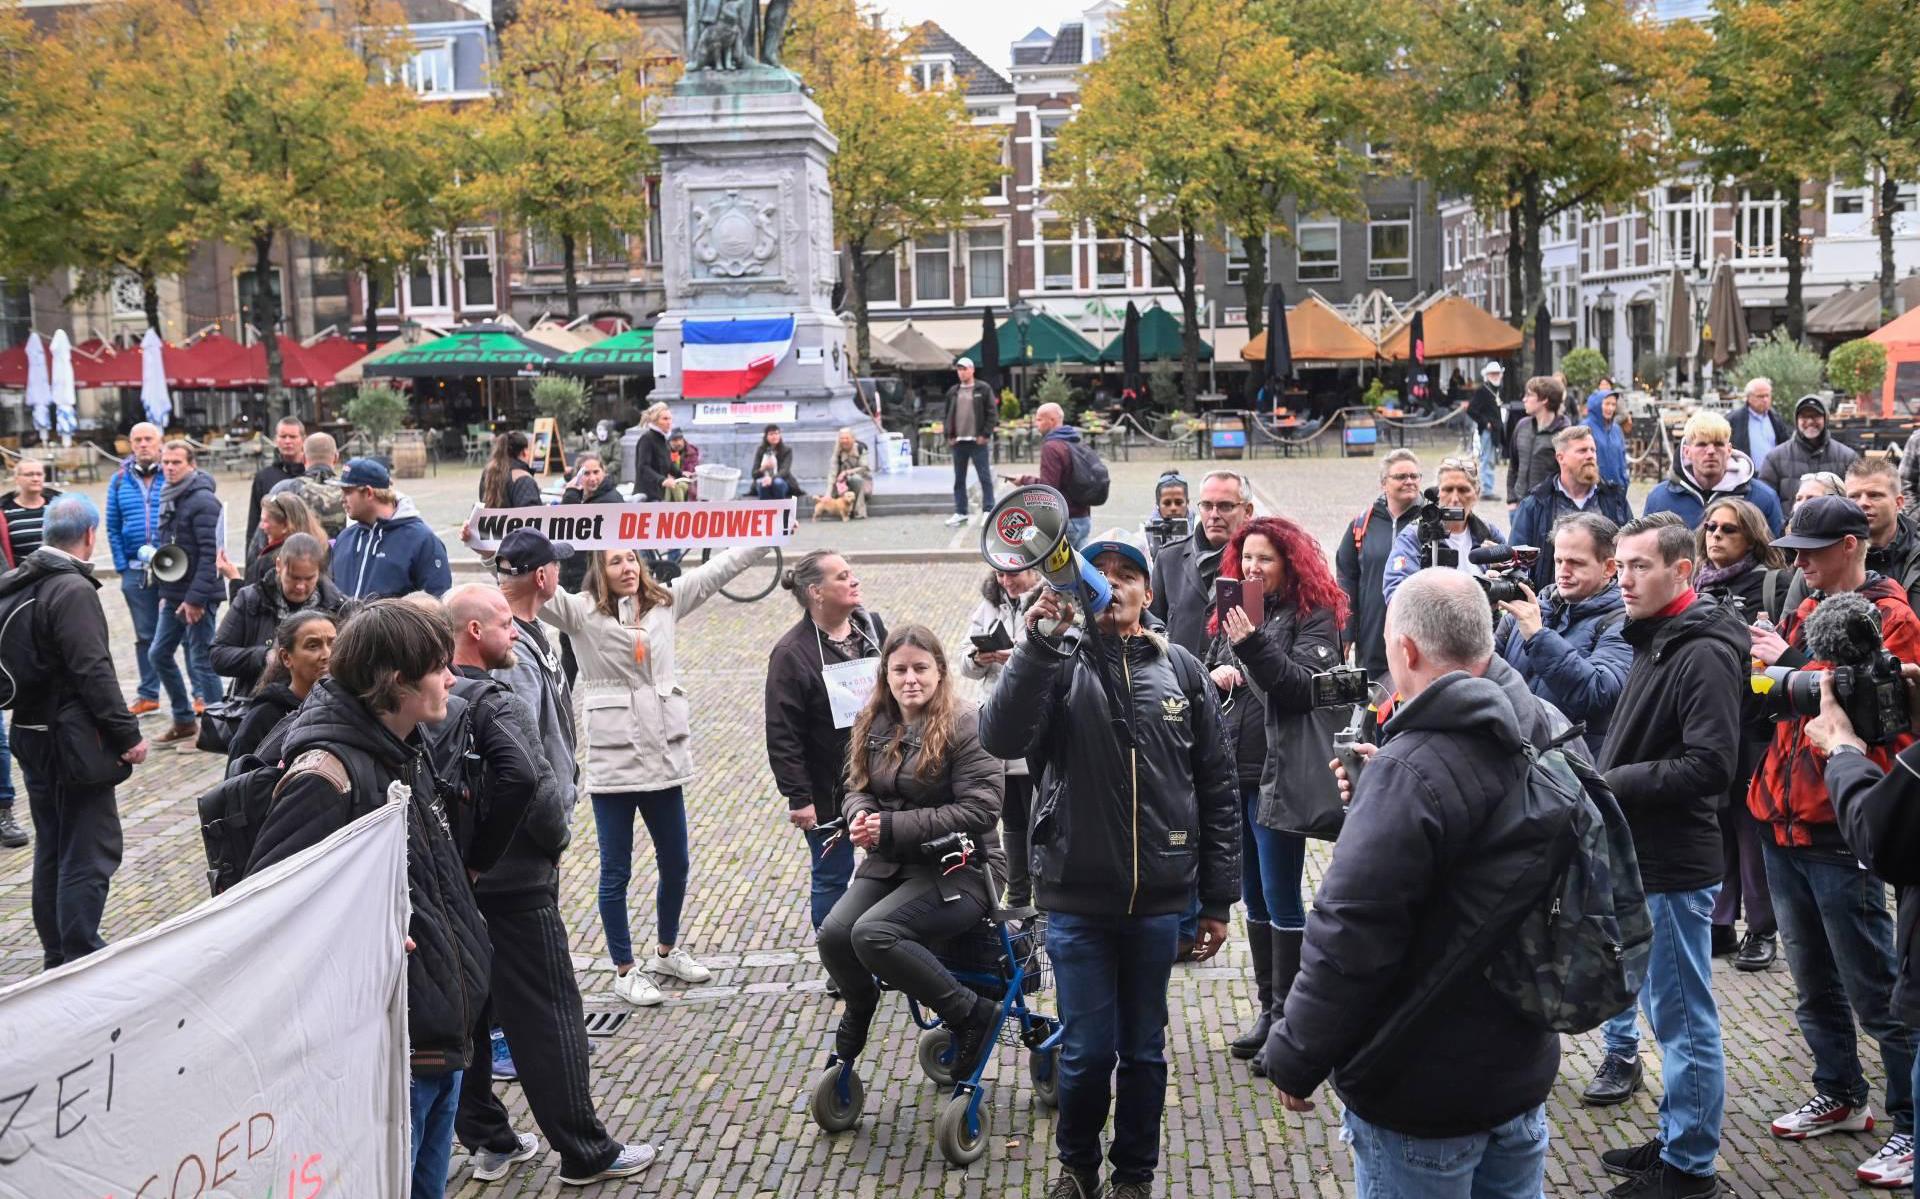 Meeste gearresteerde demonstranten Den Haag nog vast